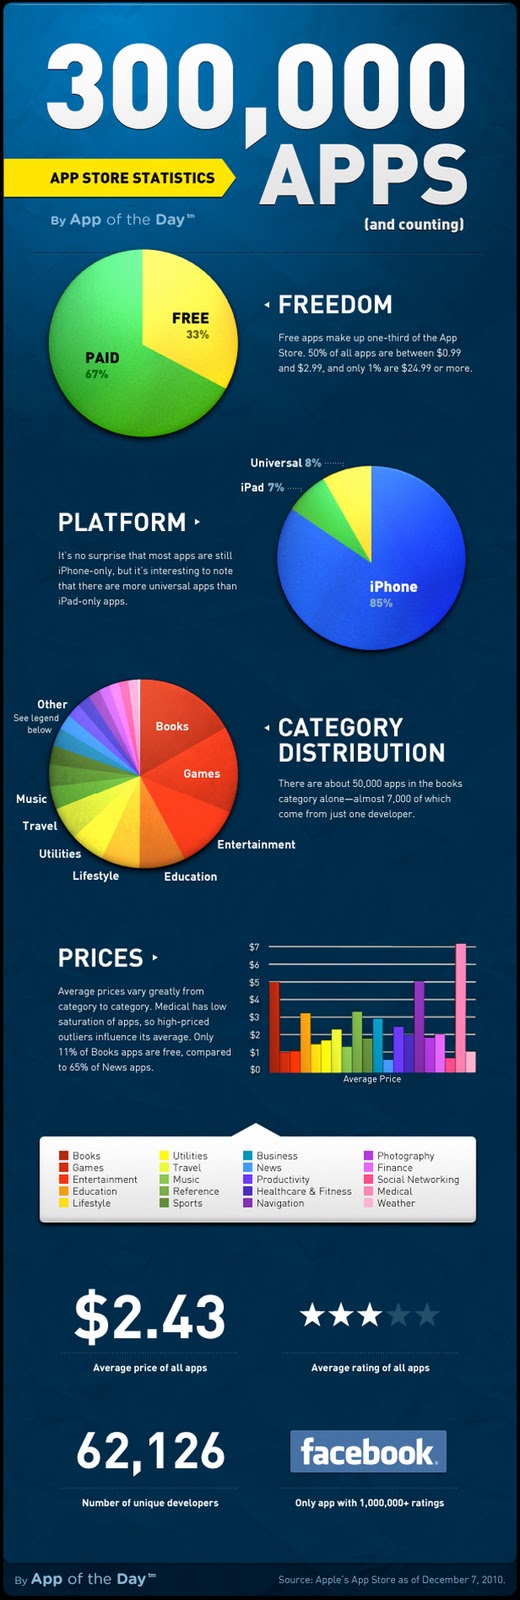 apple infographic